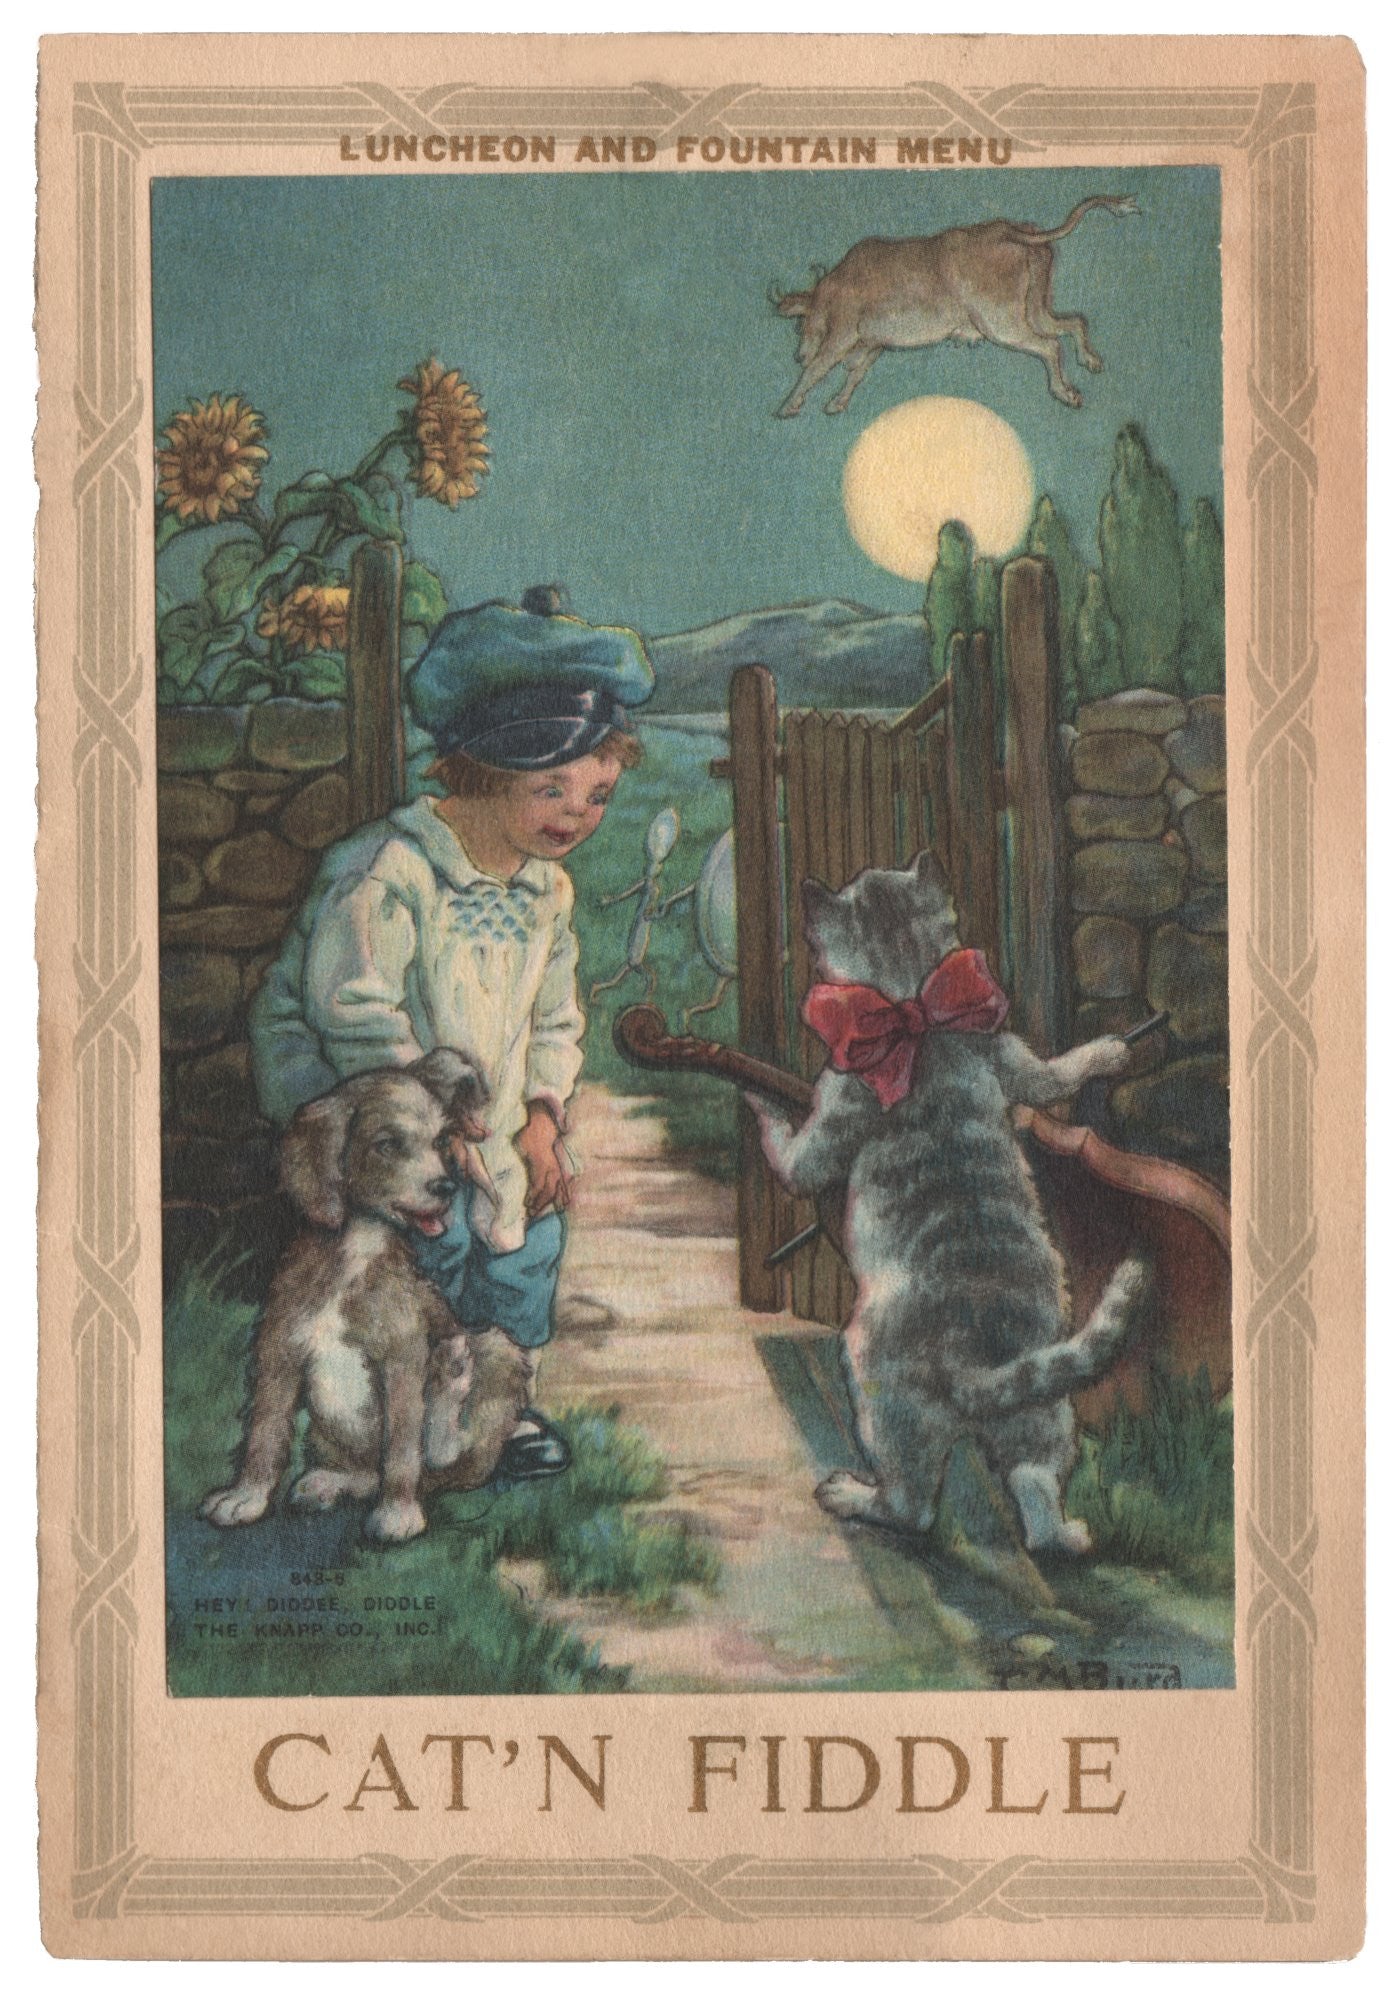 Cat ‘N Fiddle, Portland OR circa 1920 Menu Art